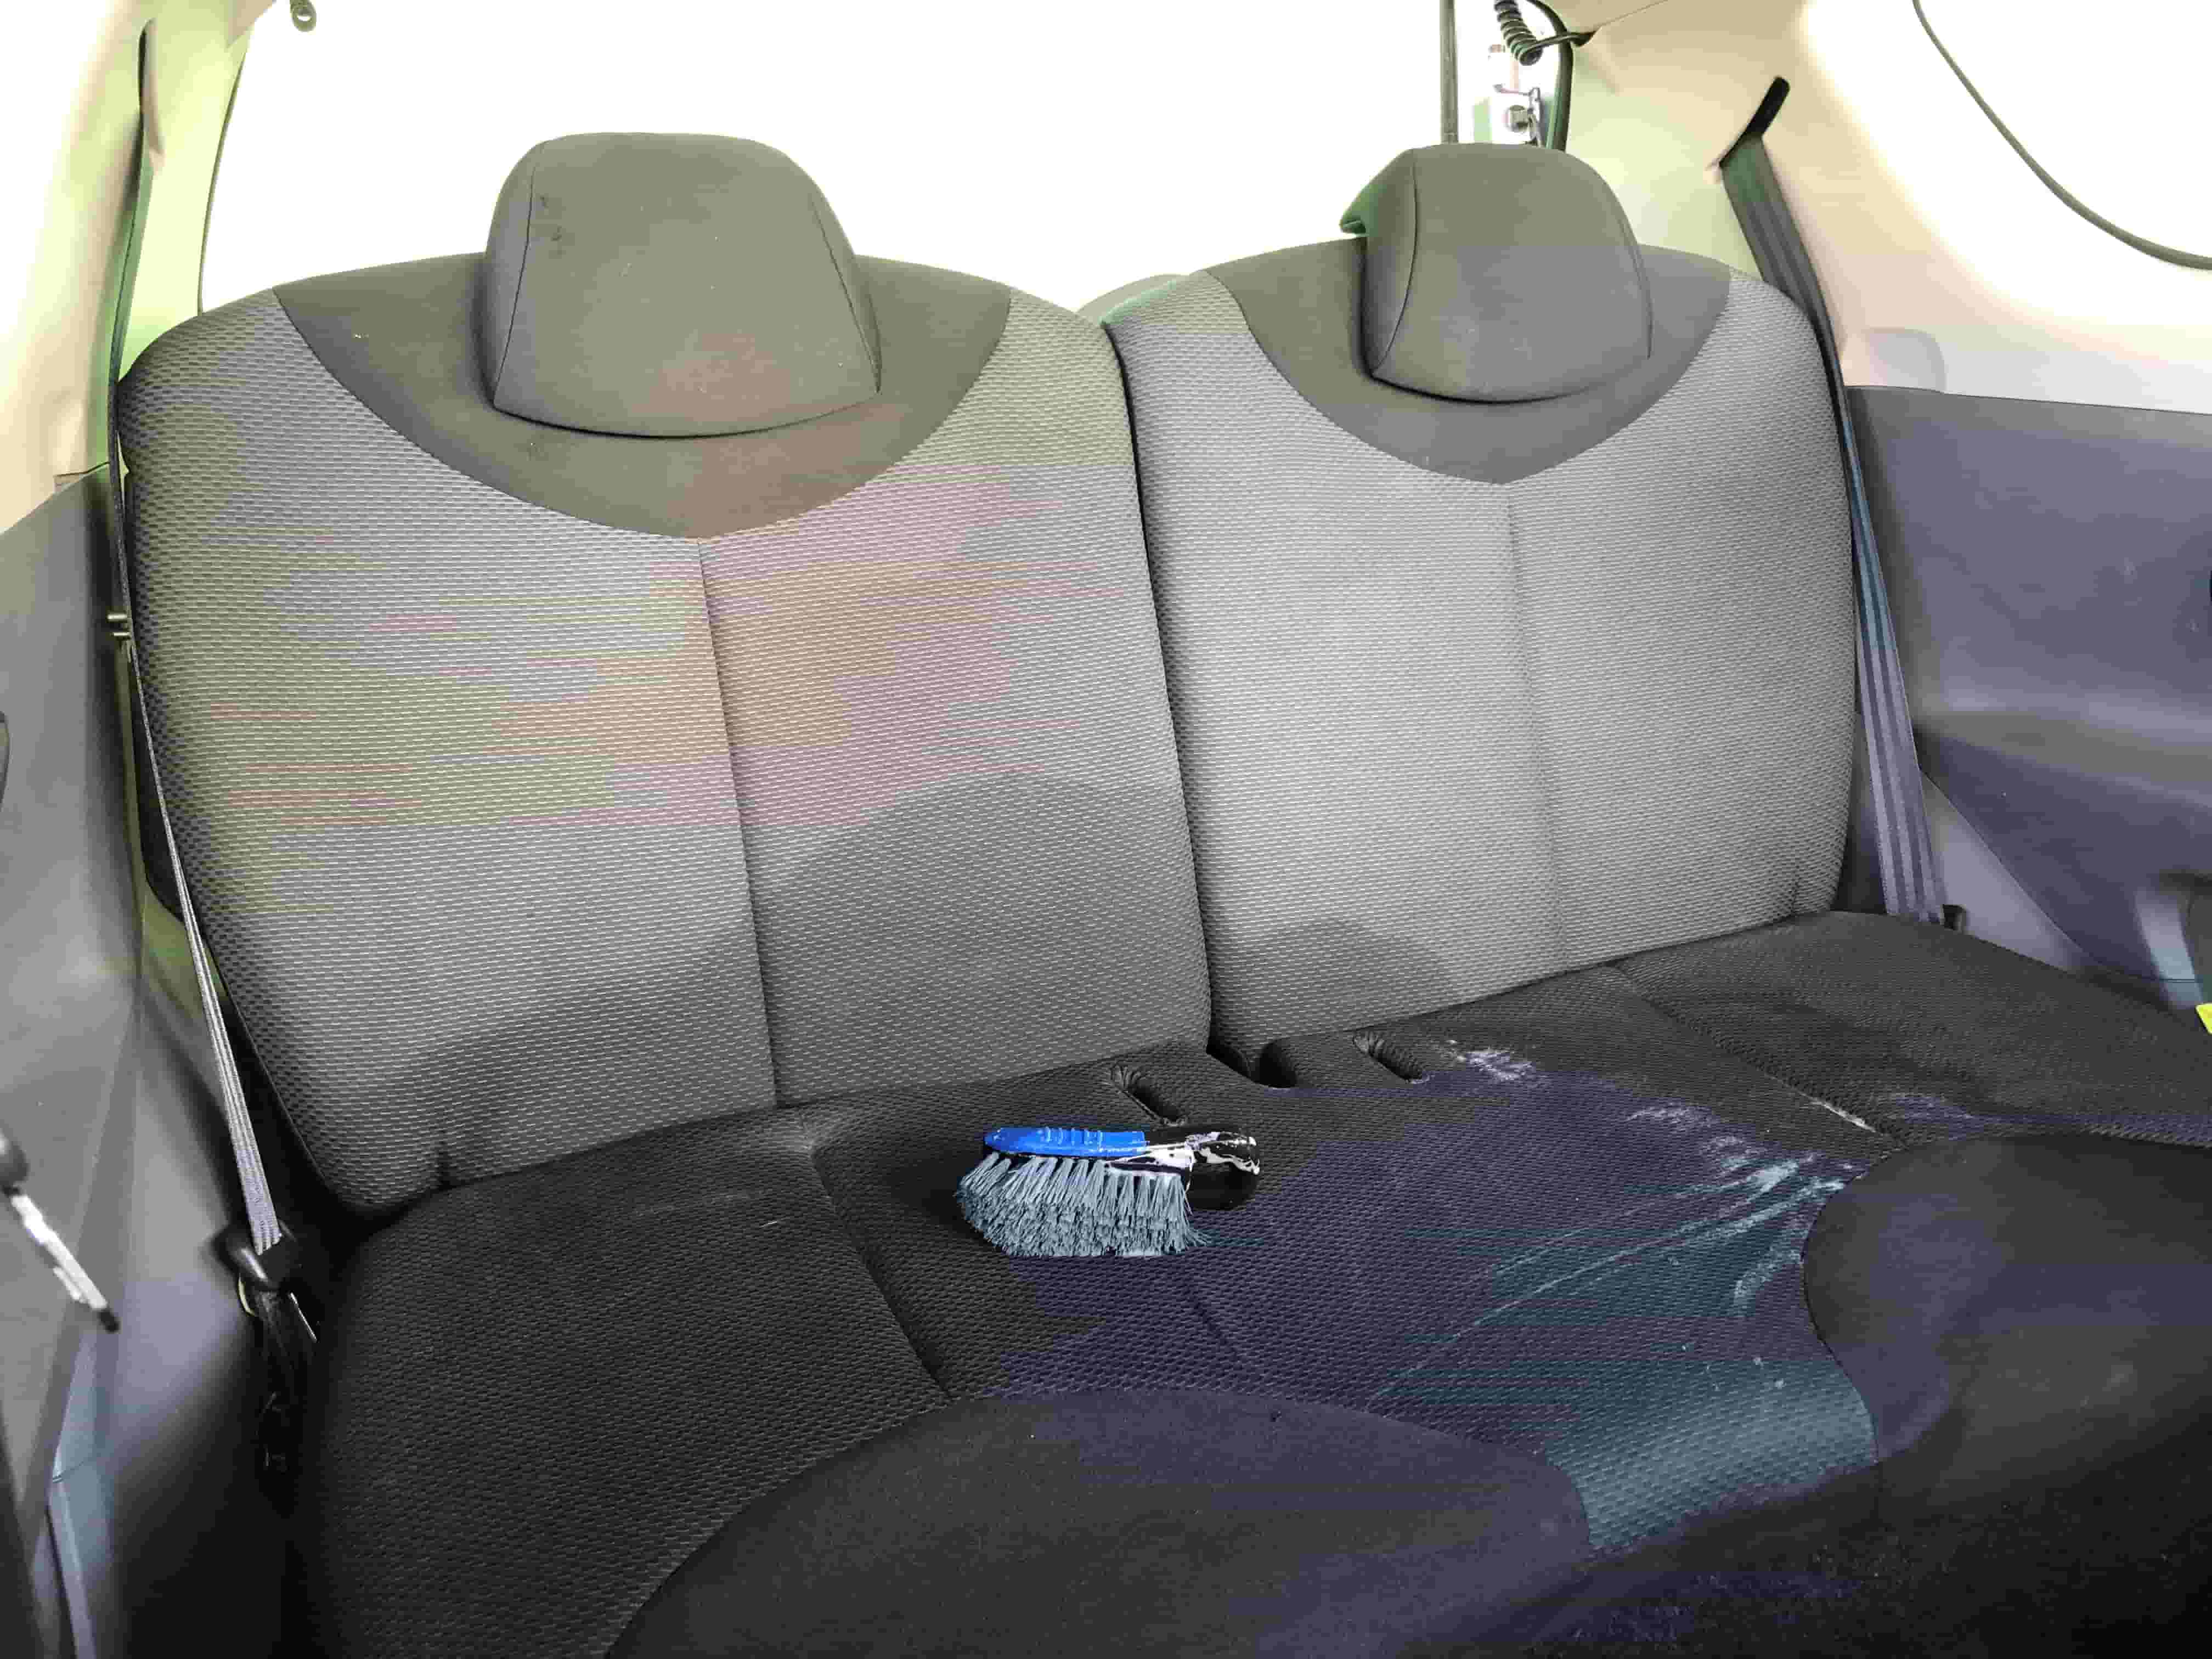 4 conseils pour réparer les sièges en tissu de sa voiture - Cosmeticar